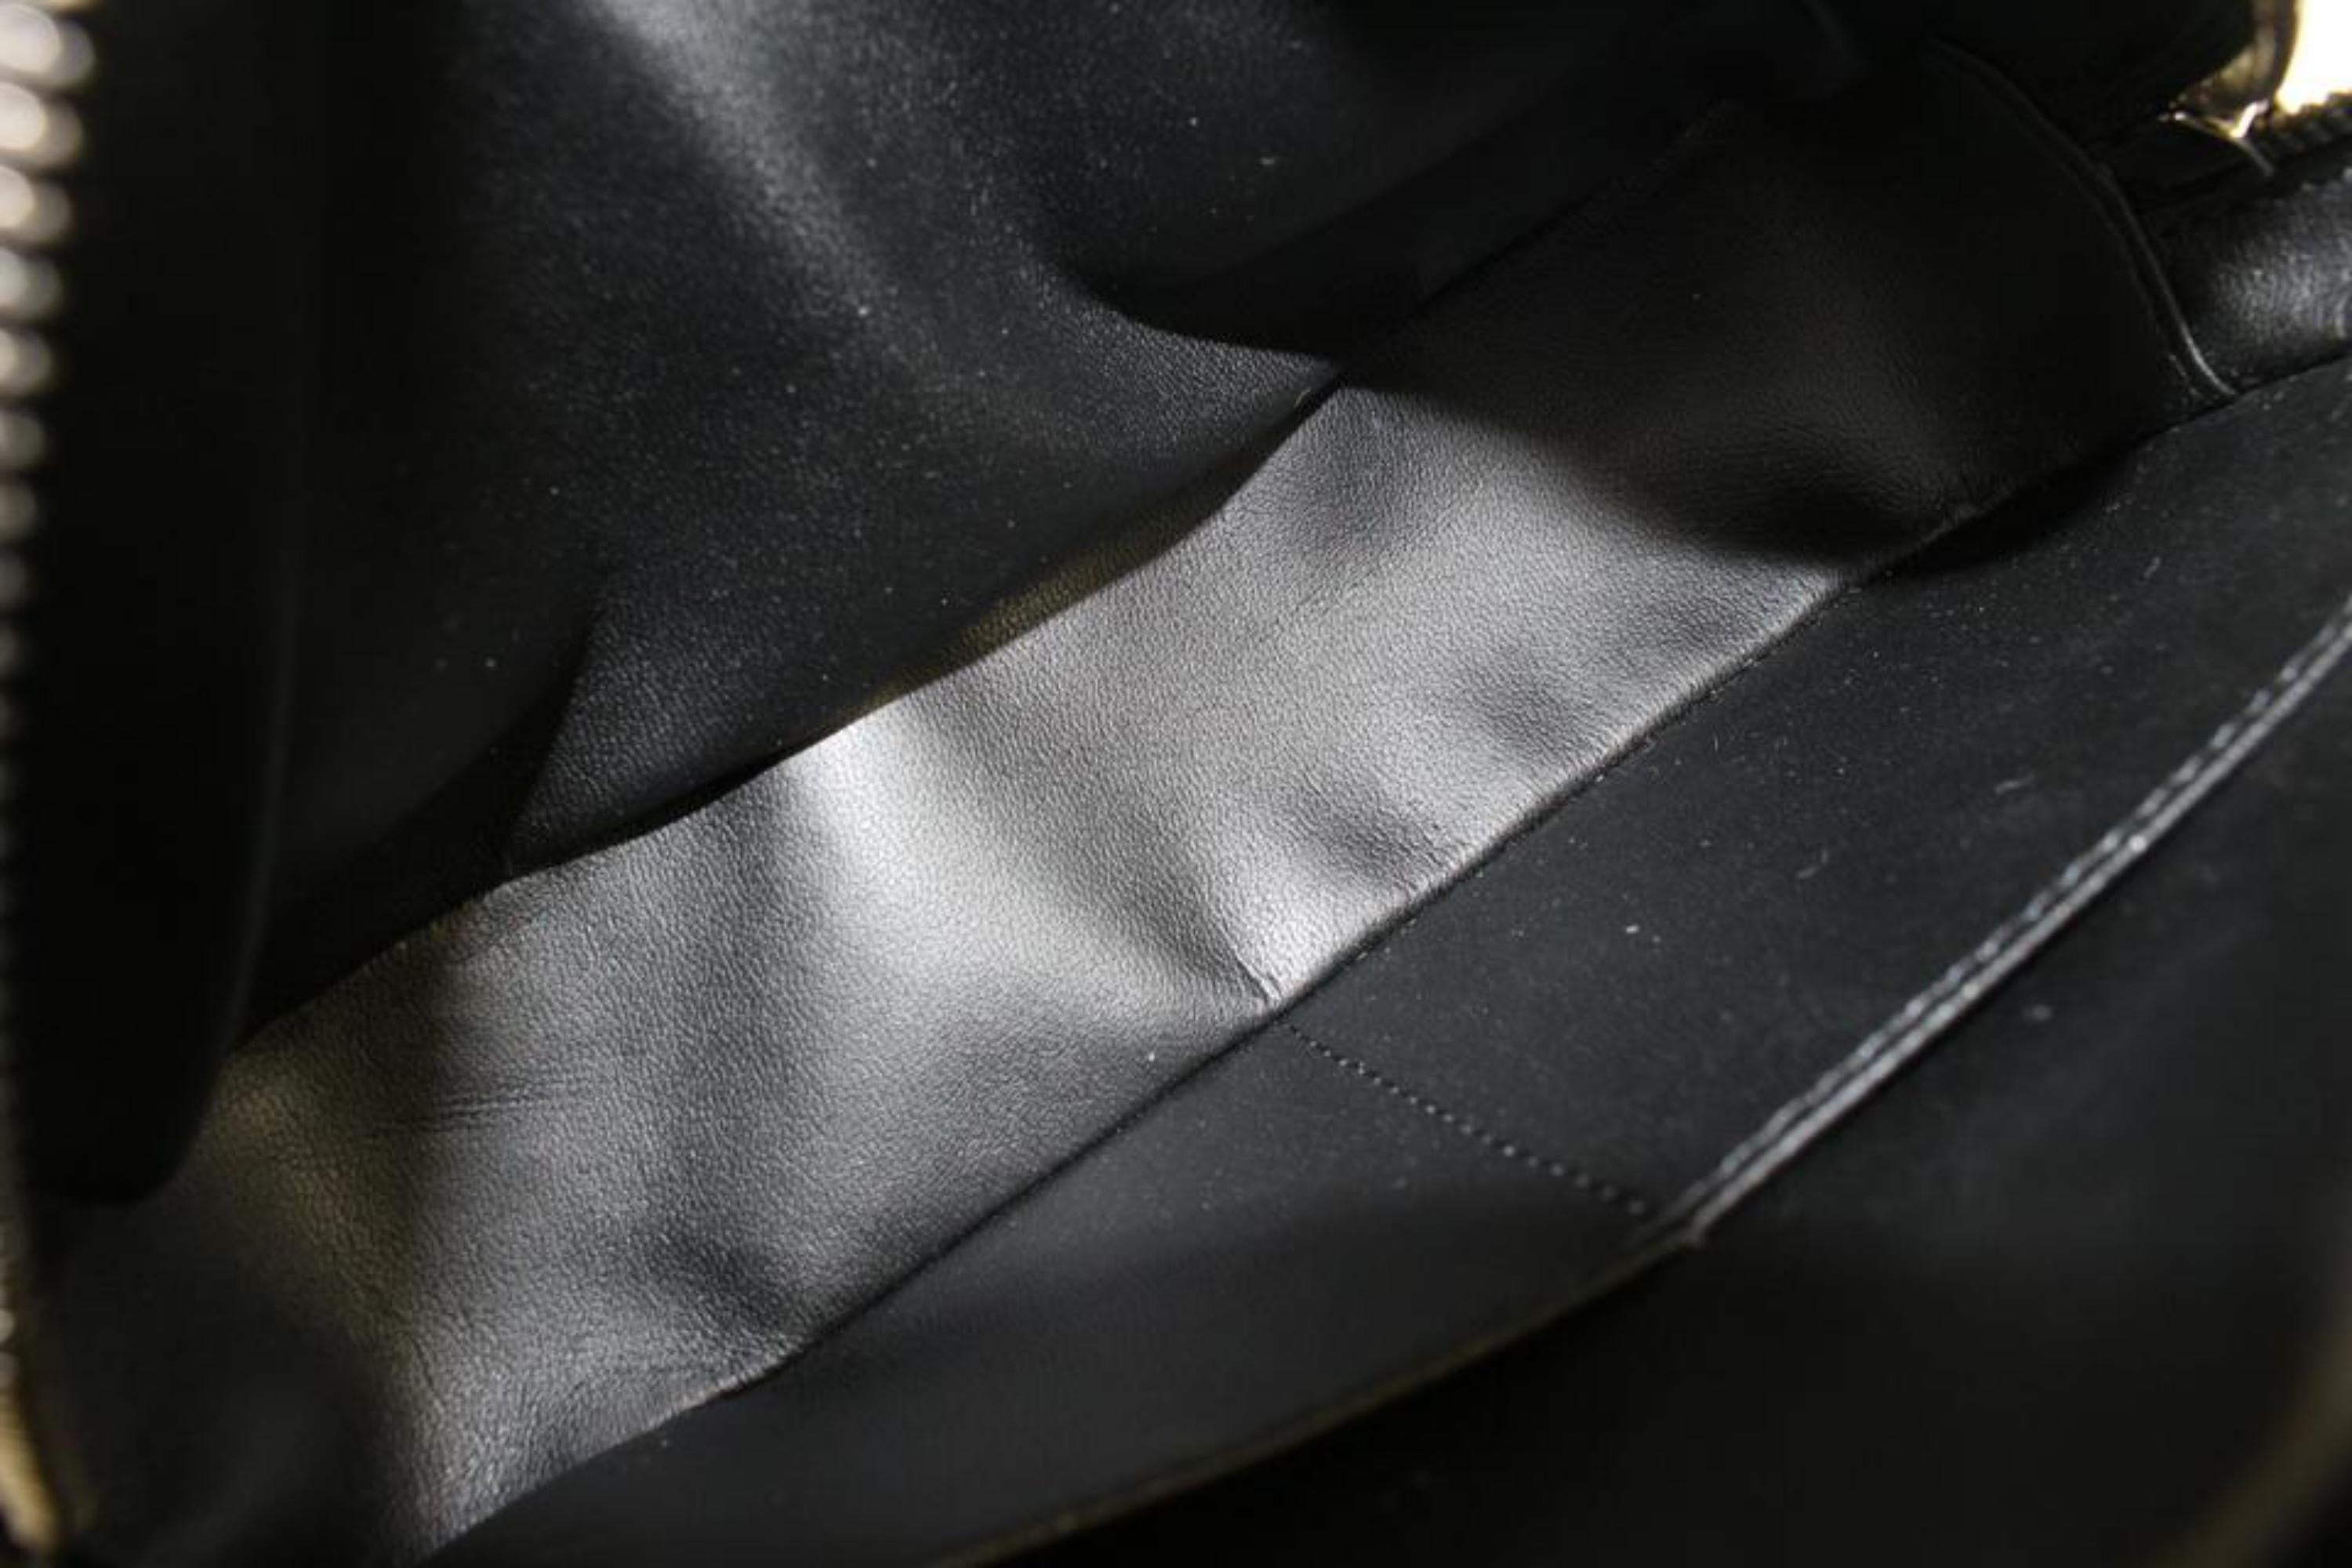 Louis Vuitton - Pantalon noir monogrammé Eclipse Trousse PM Poche de toilette Dopp 52lz44 Bon état à Dix hills, NY